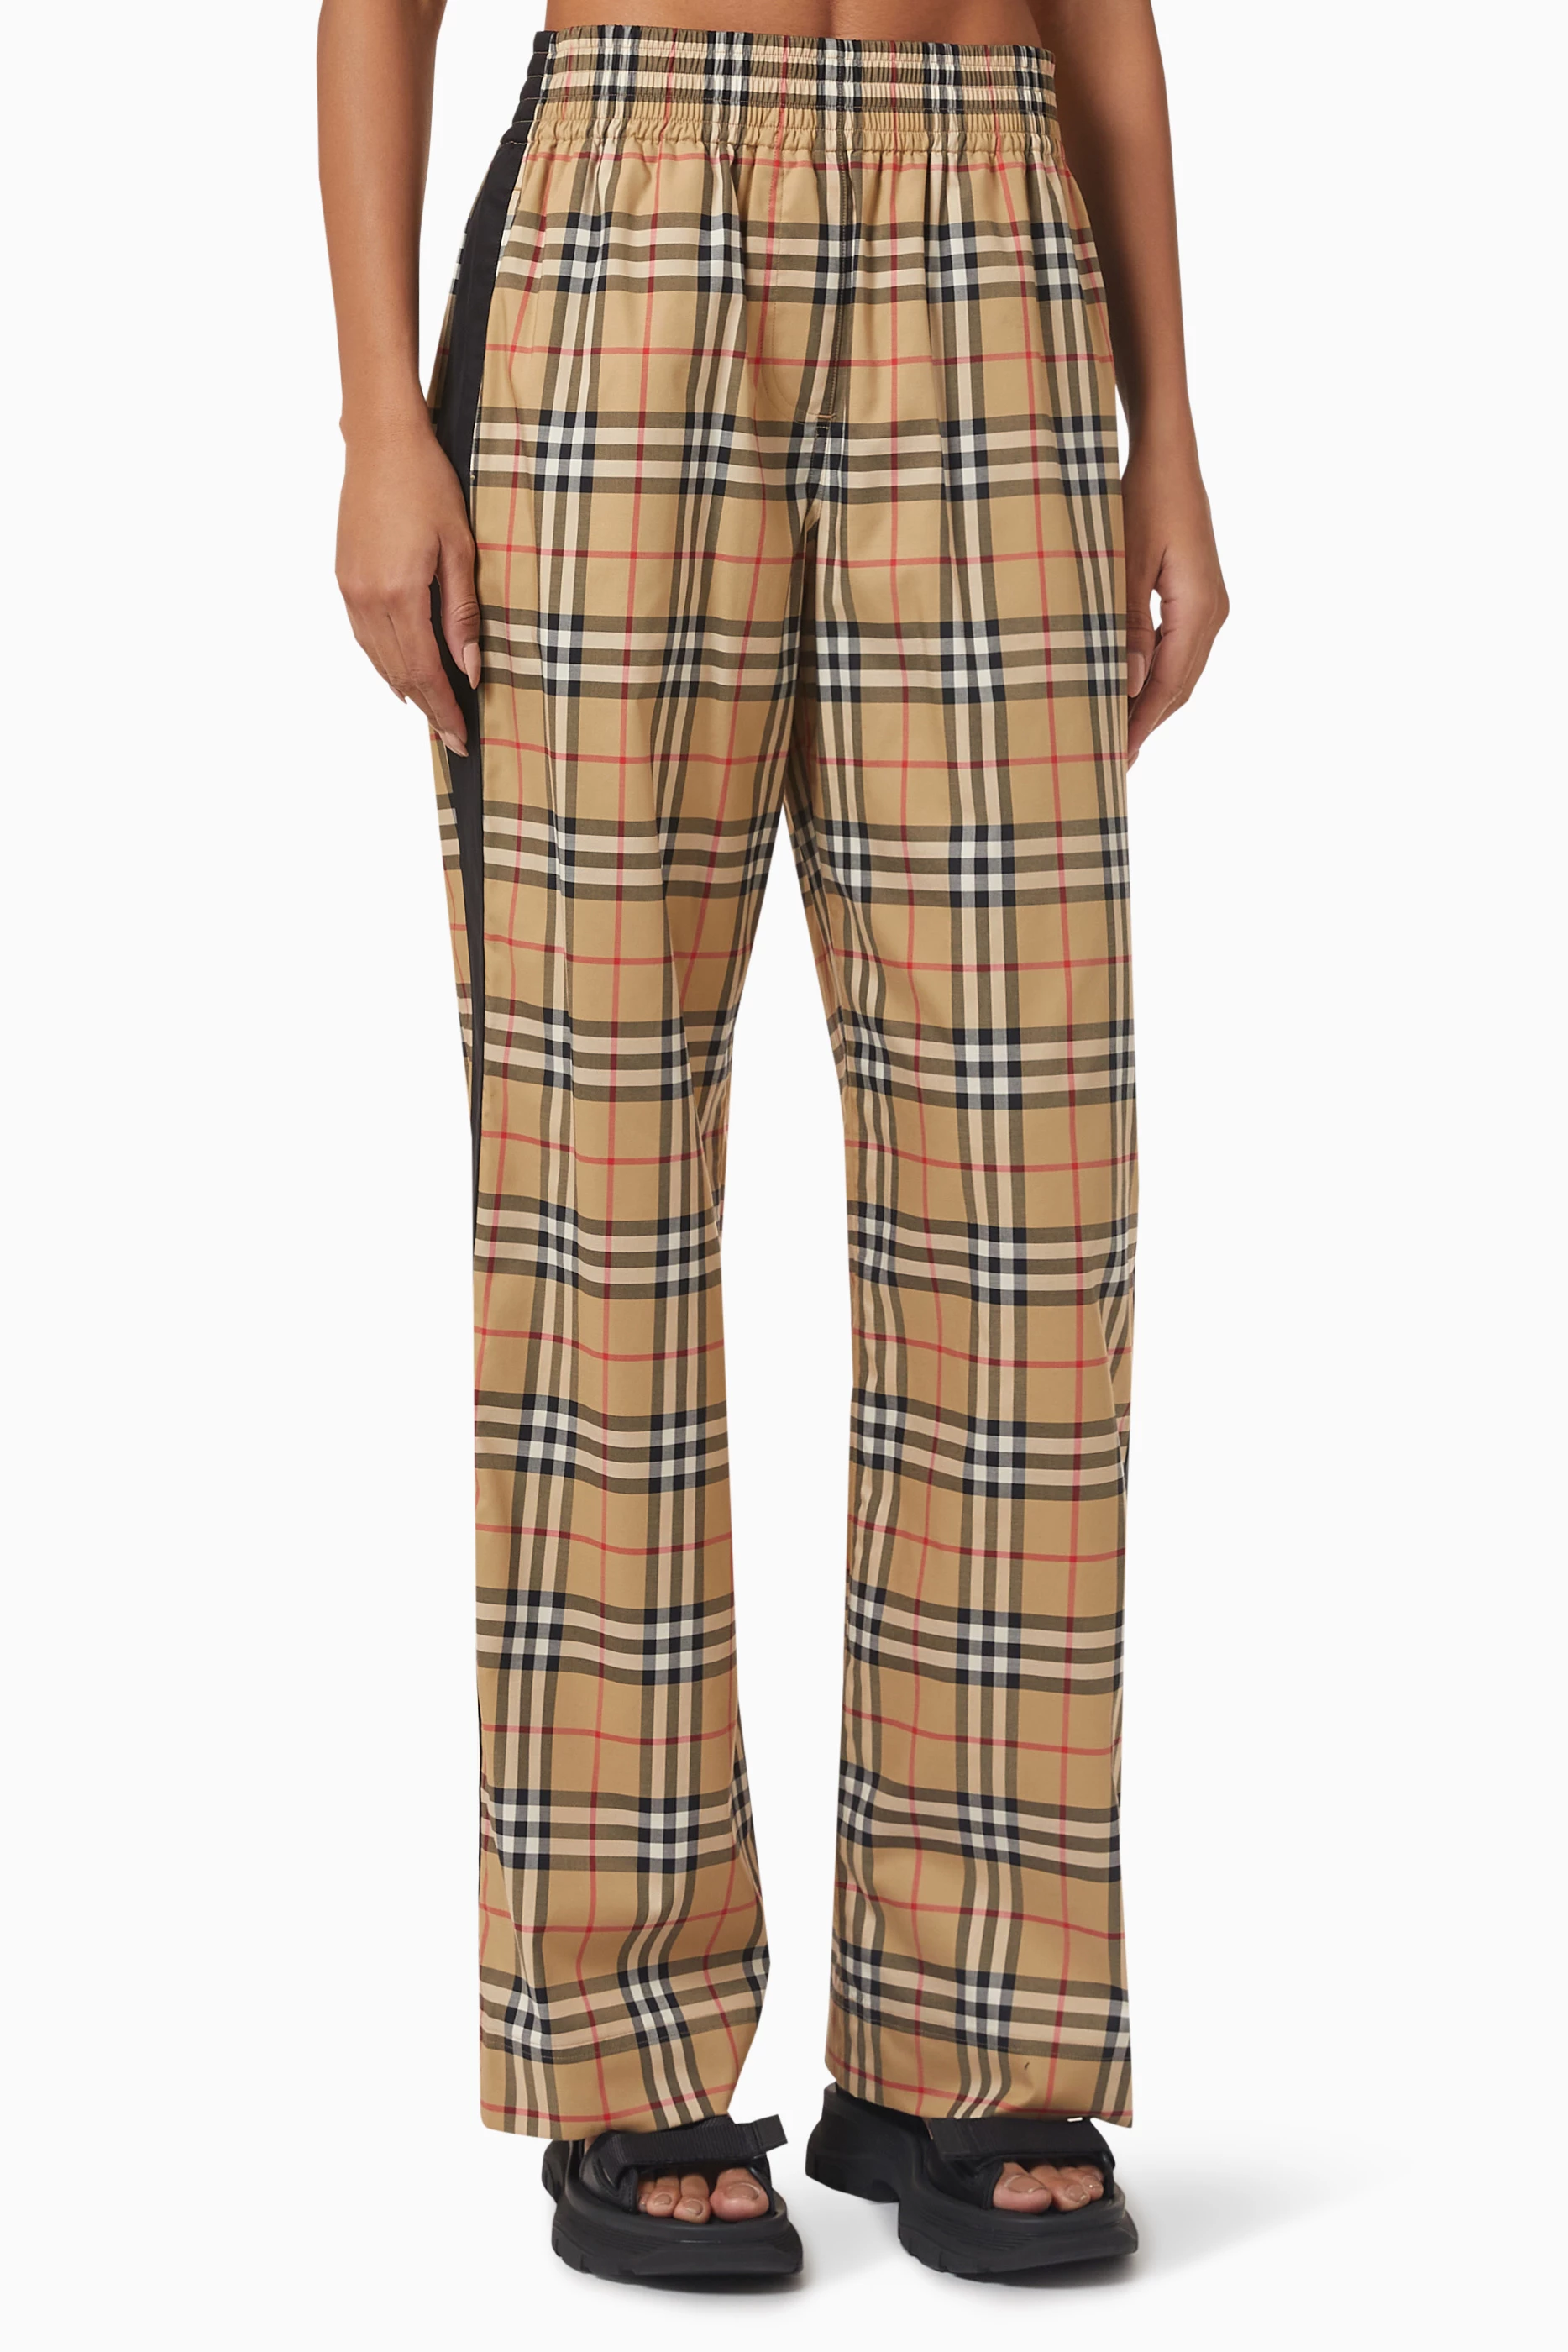 Burberry Check Pajama Pants for Women